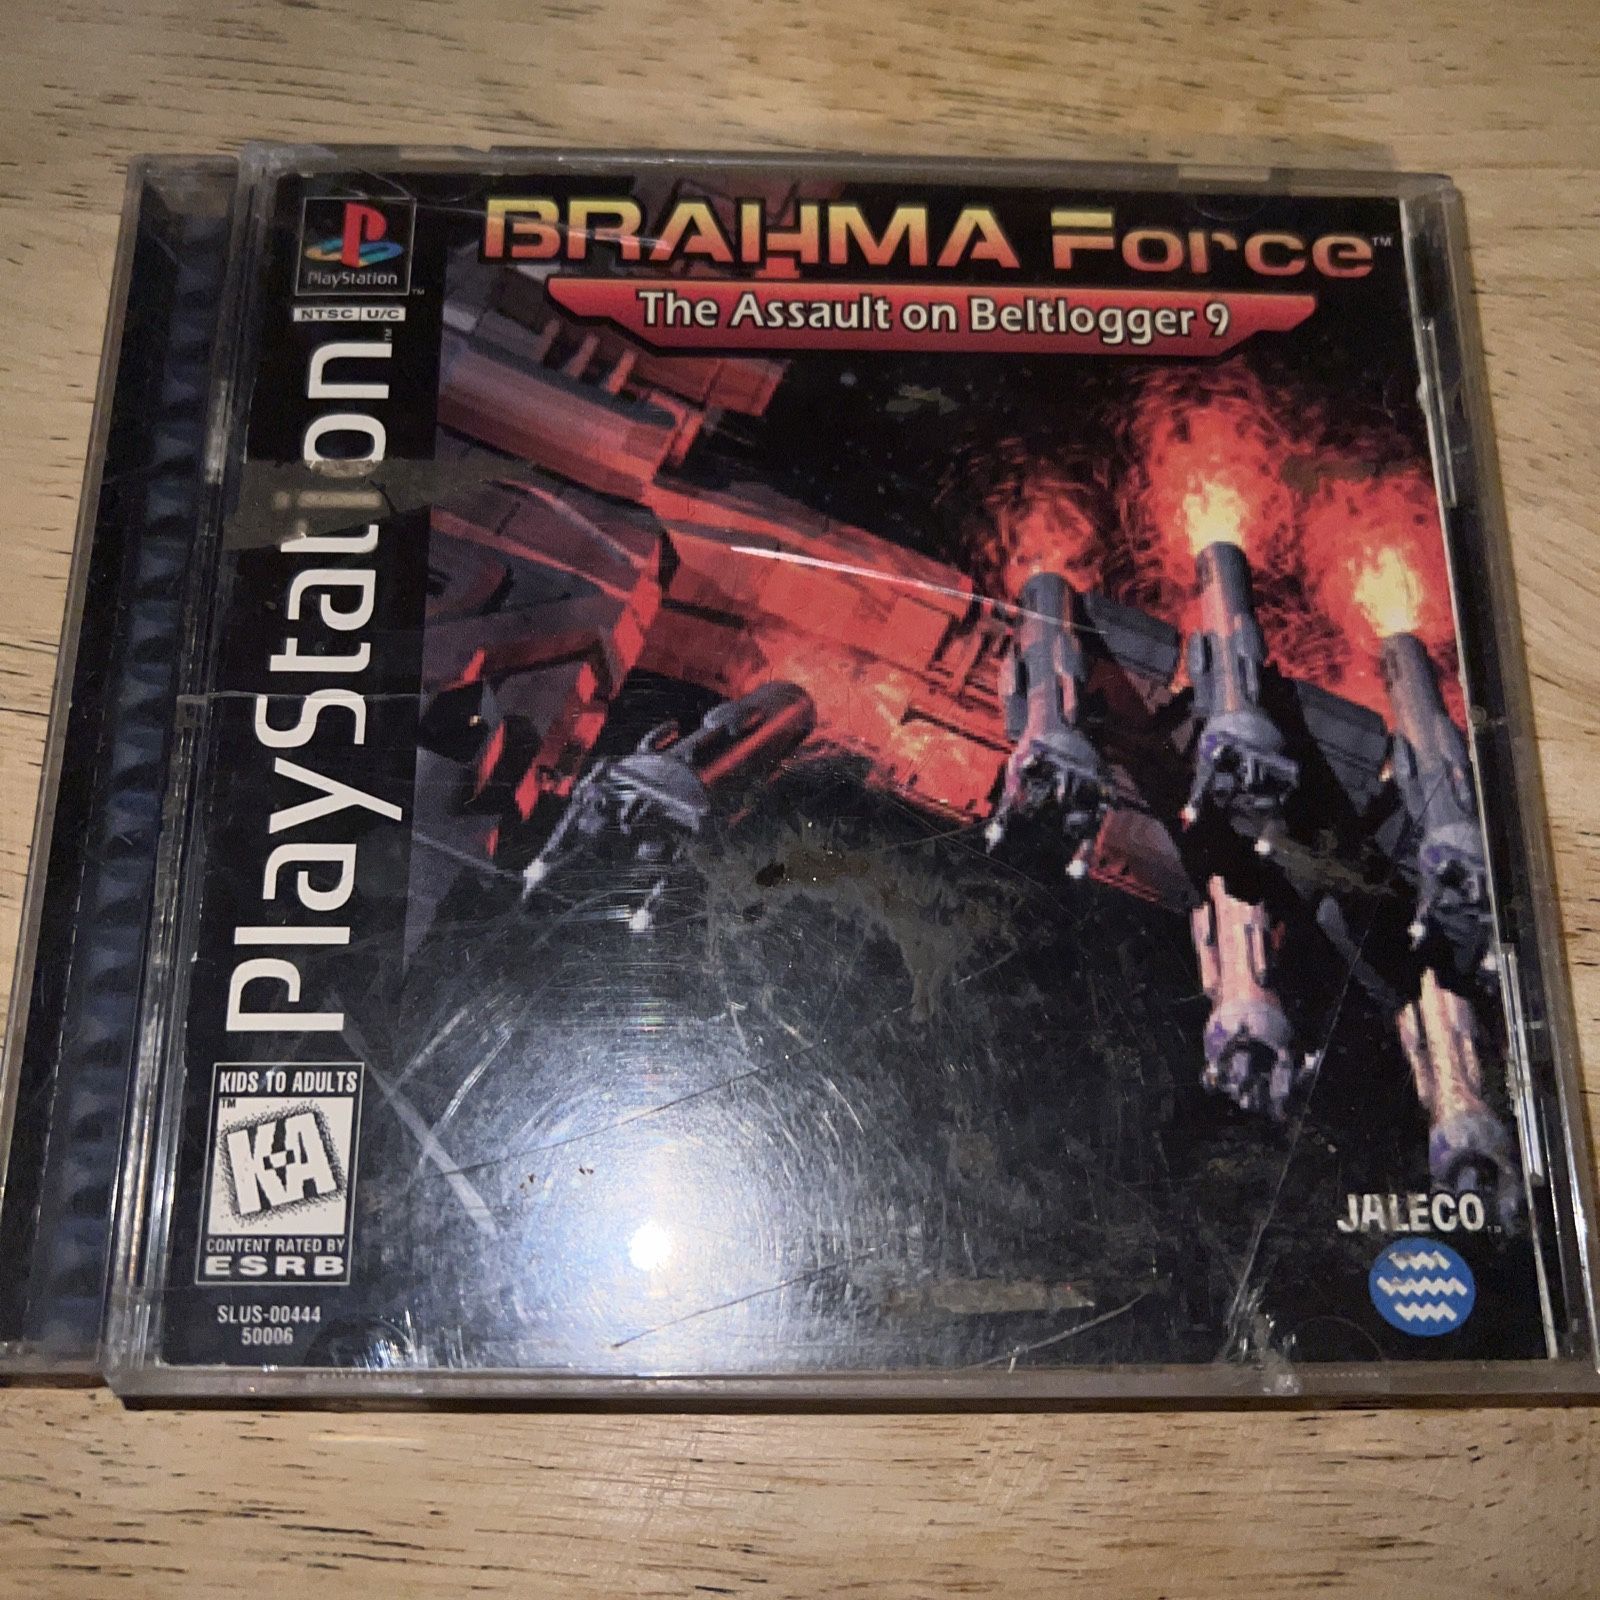 BRAHMA Force: The Assault on Beltlogger 9 PlayStation “Read Description”